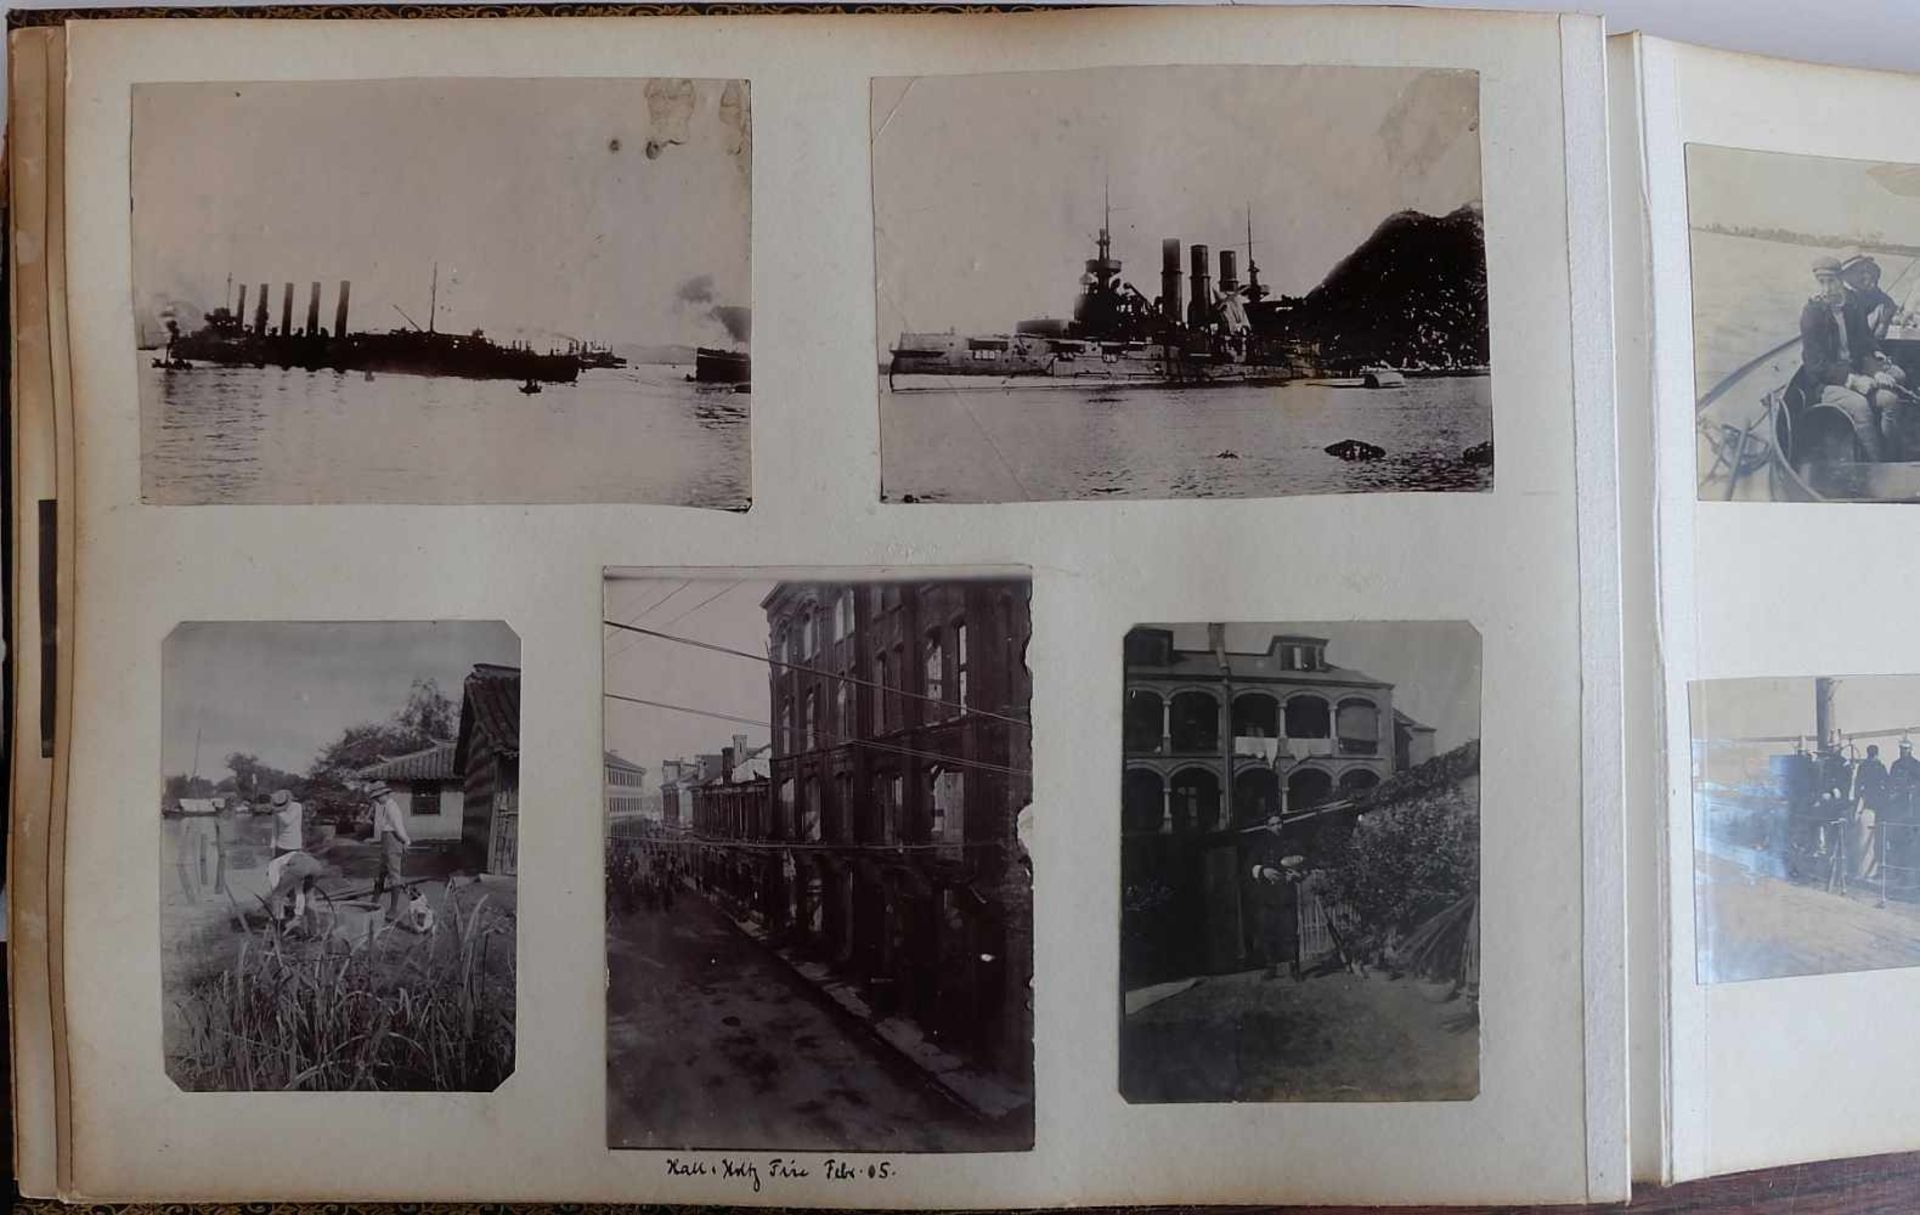 DEUTSCHES REICH, 2 Fotoalben, Shanghai, um 1900, Fotos des Militär- und Freizeitlebens eines - Image 4 of 7